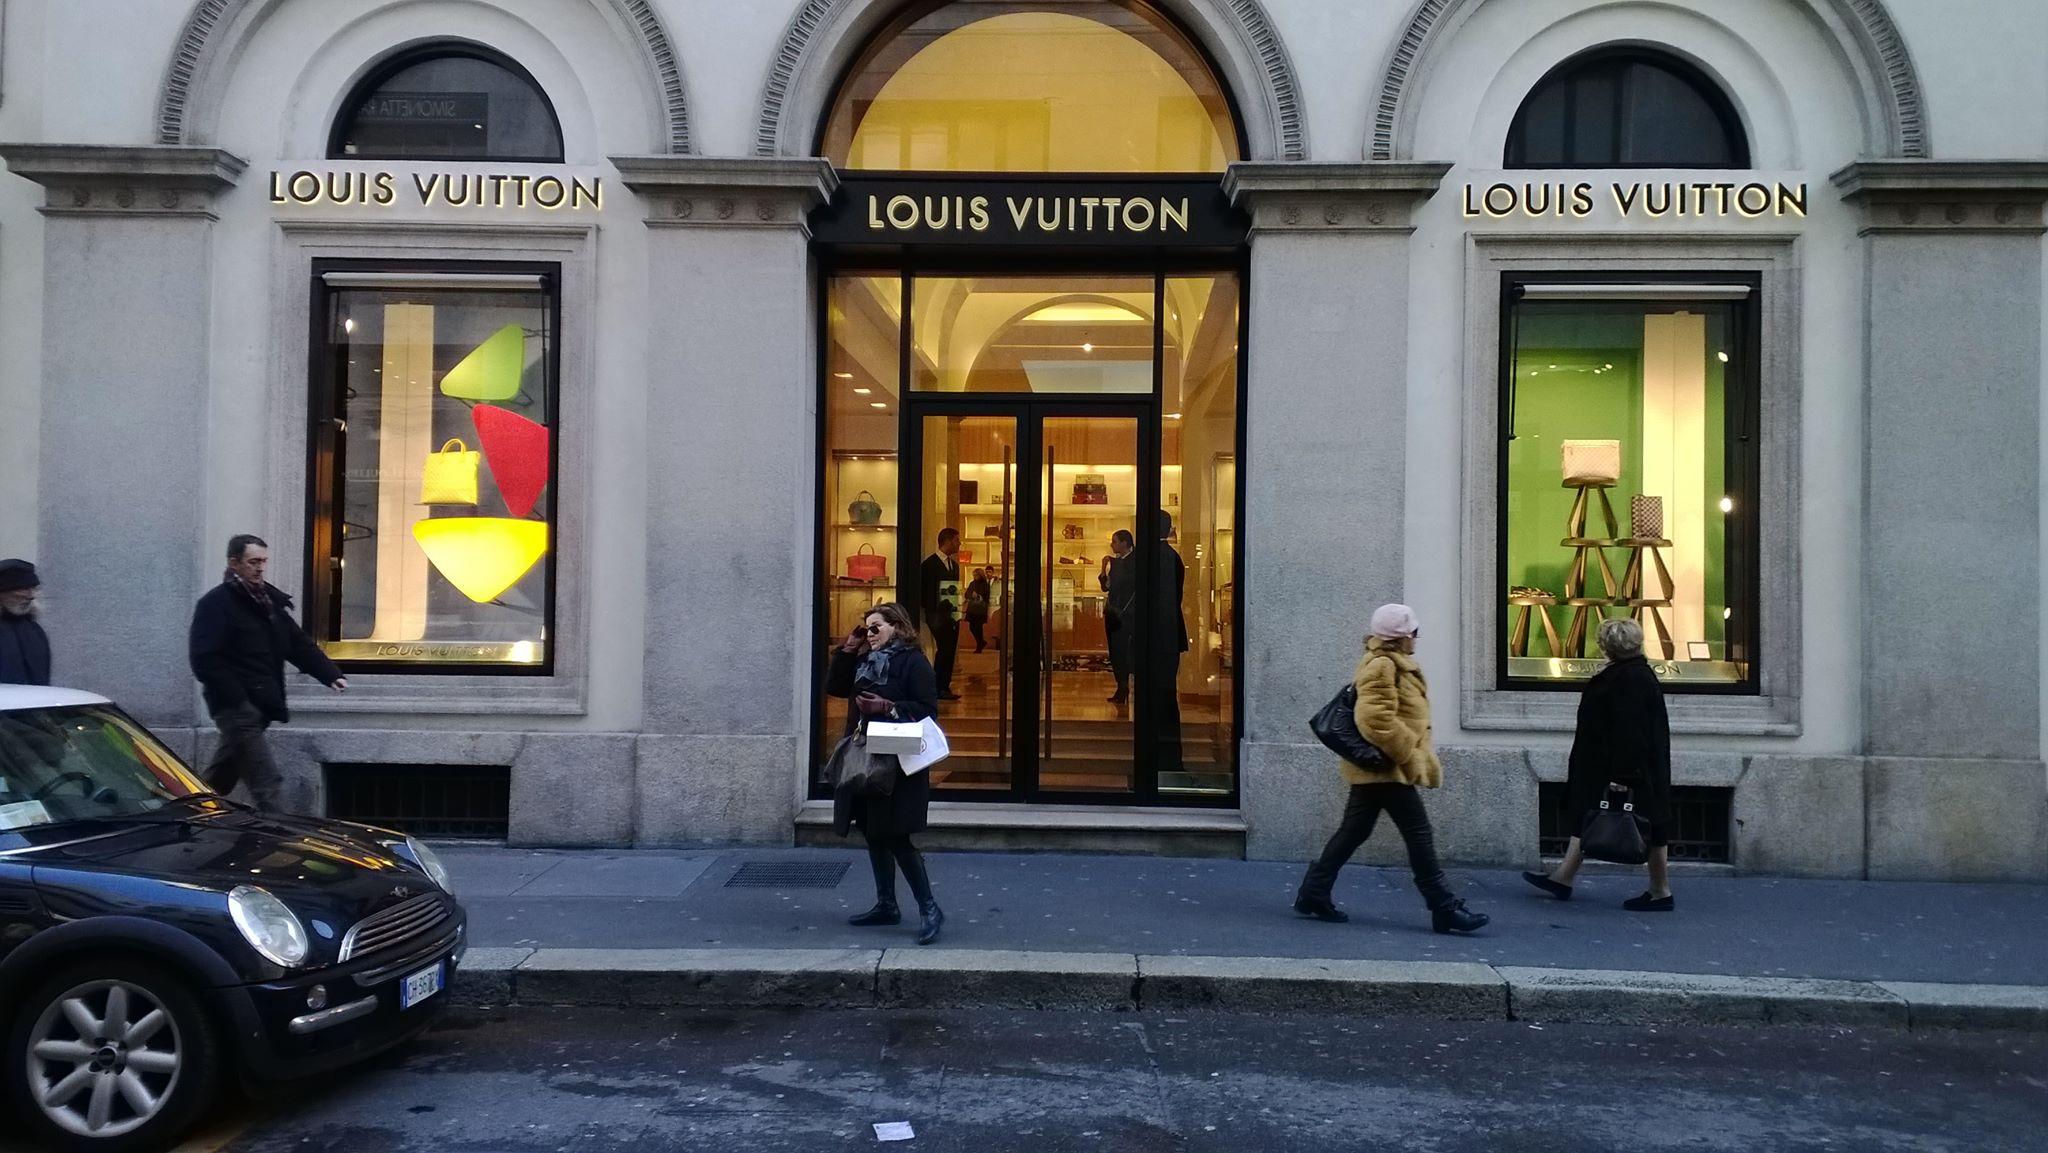 Maxifurto da Louis Vuitton in via Montenapoleone: sparite borse